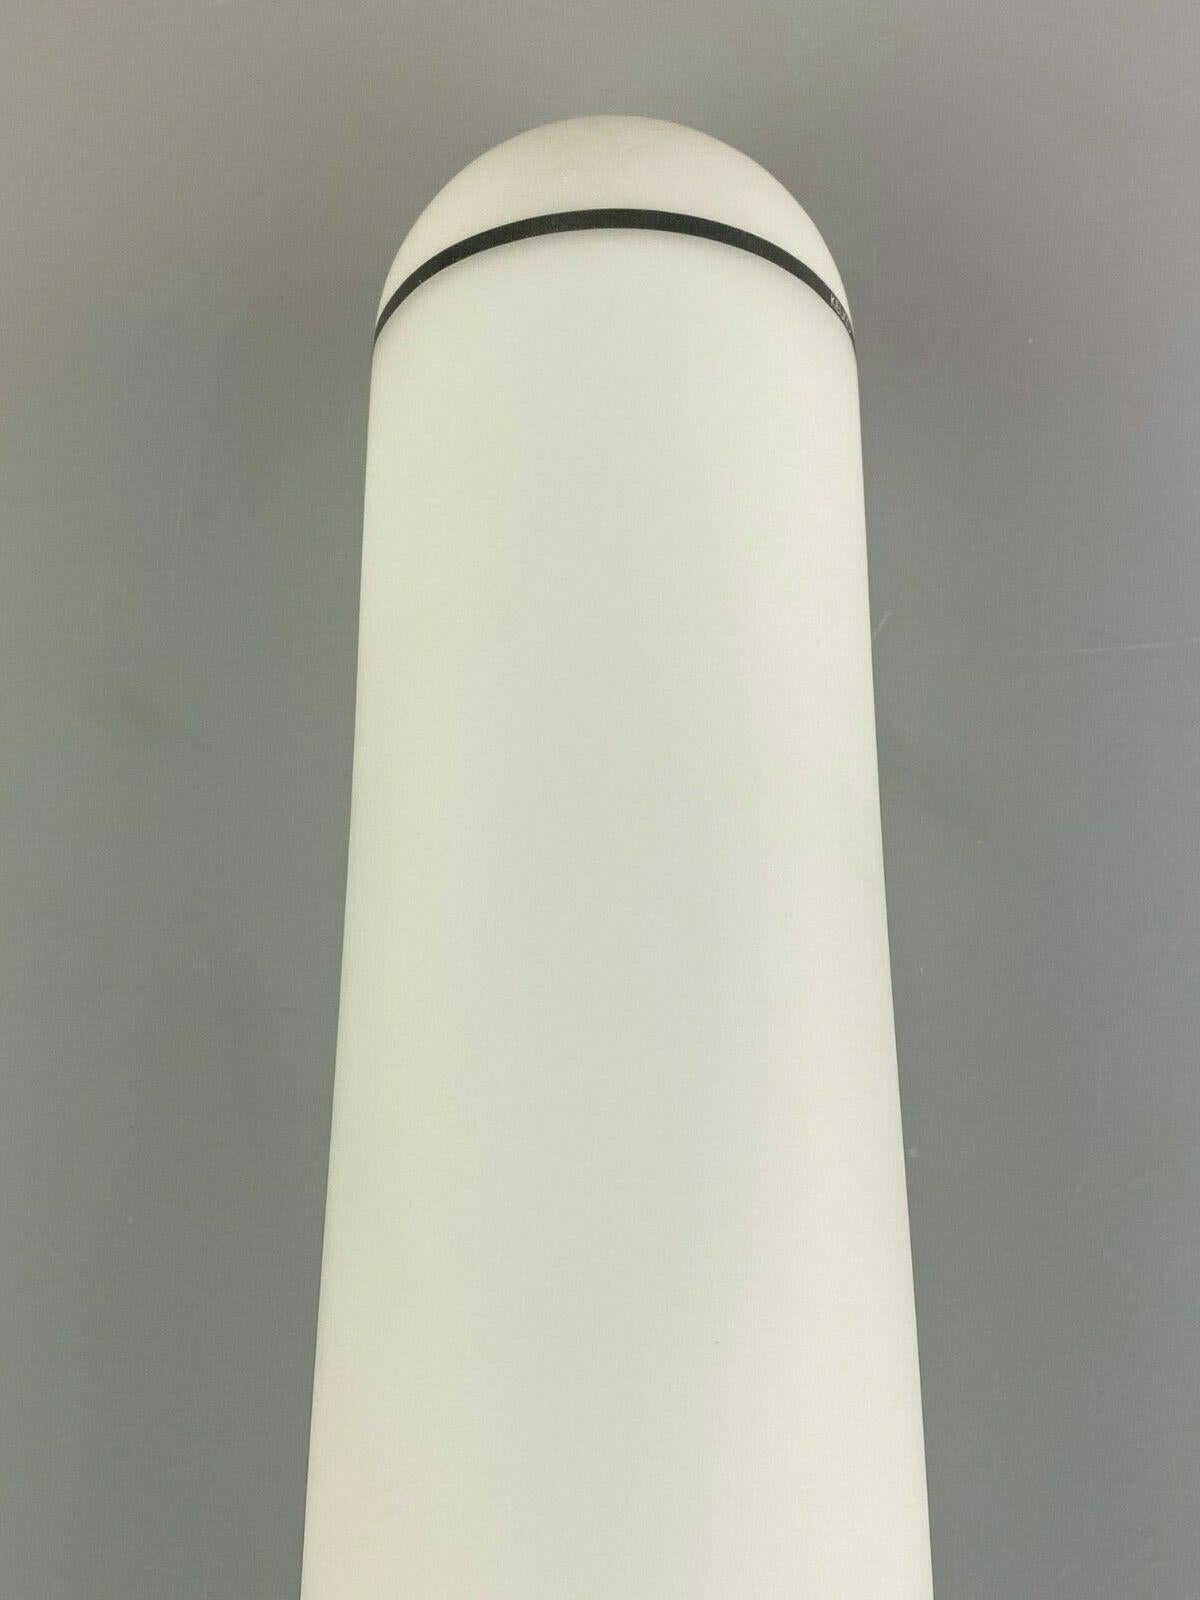 80er Jahre Lampe Licht Wandlampe Wandleuchte Opalglas Weiß Metall Design (Deutsch)